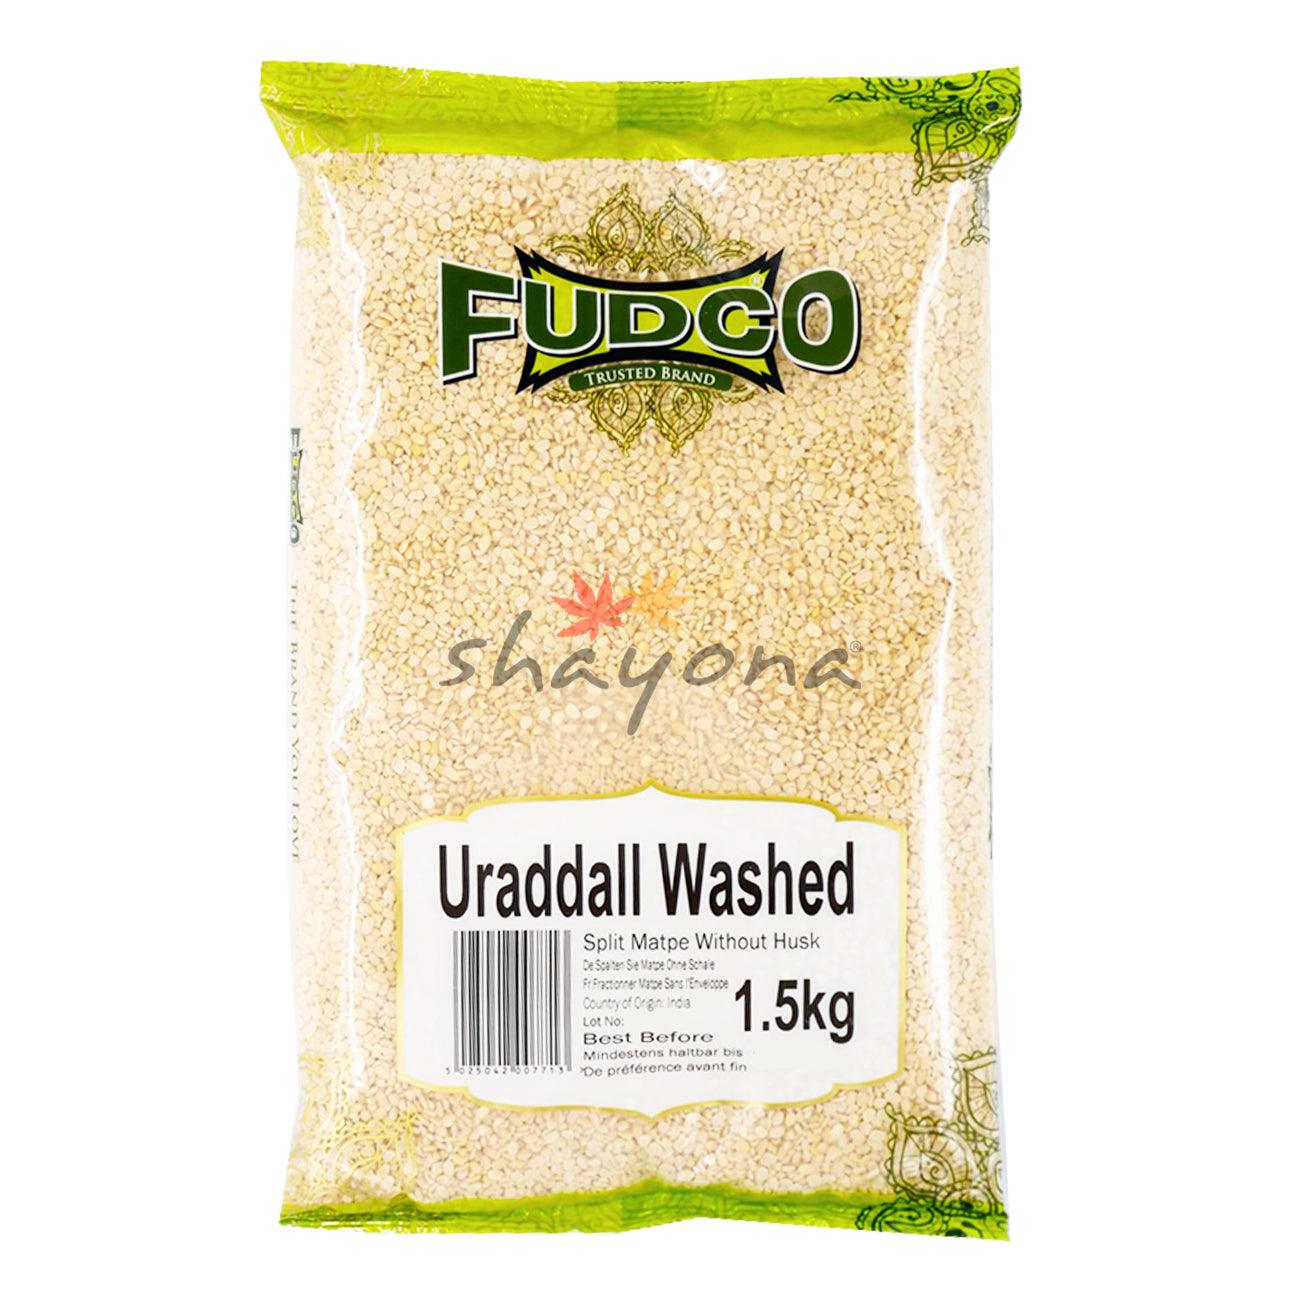 Fudco Urad Dall Washed - Shayona UK